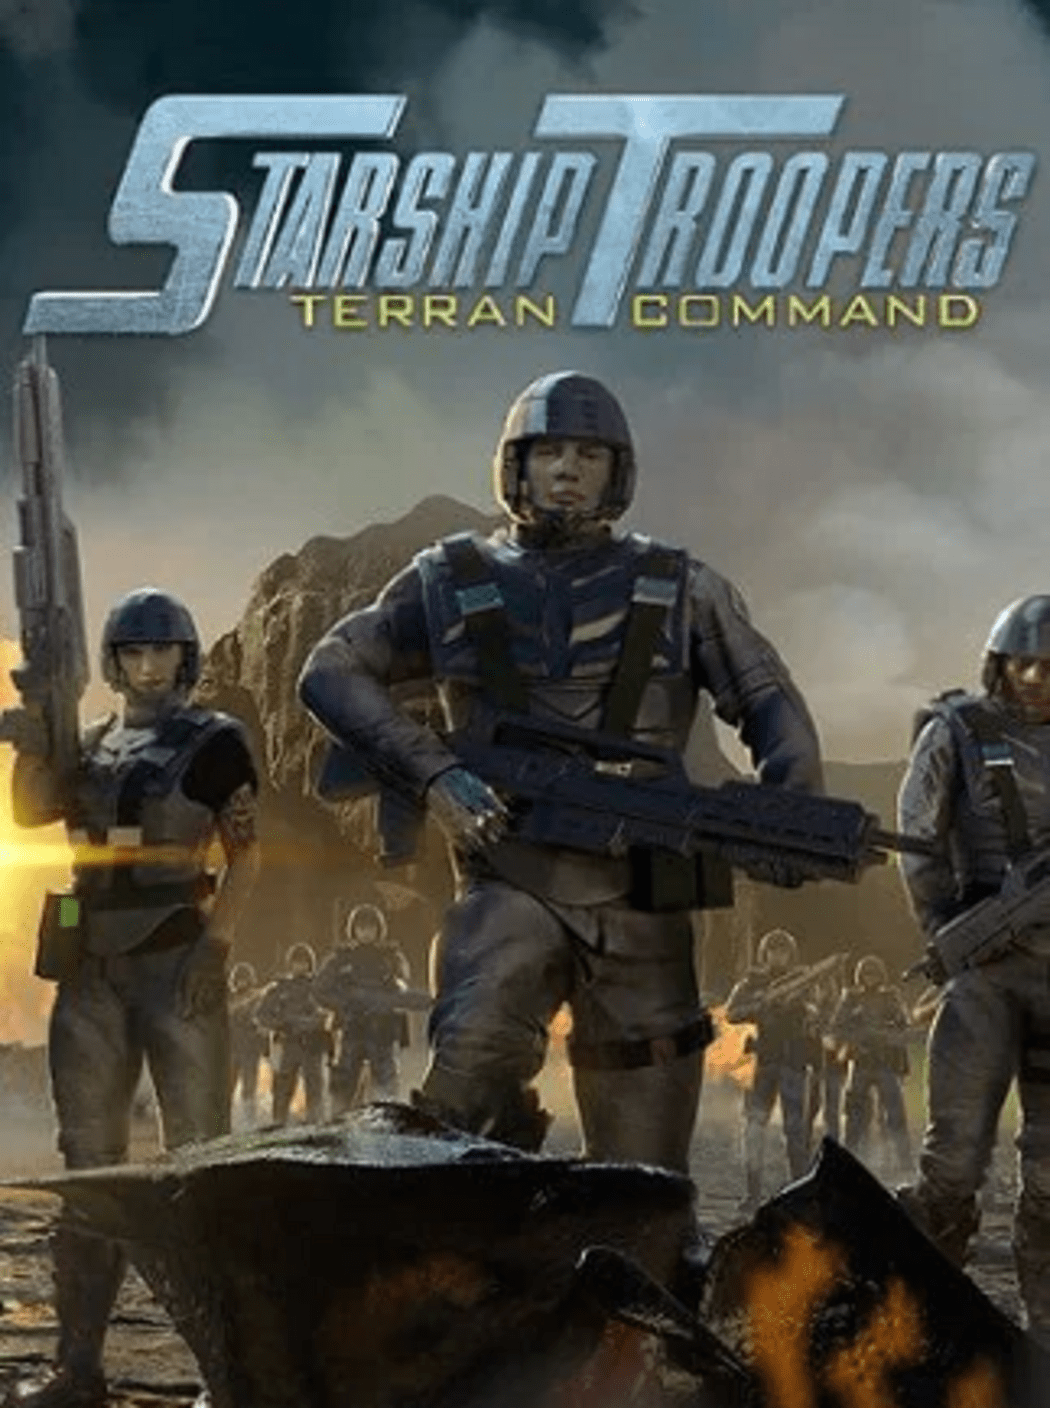 Extermina bichos en Starship Troopers: Extermination es un nuevo